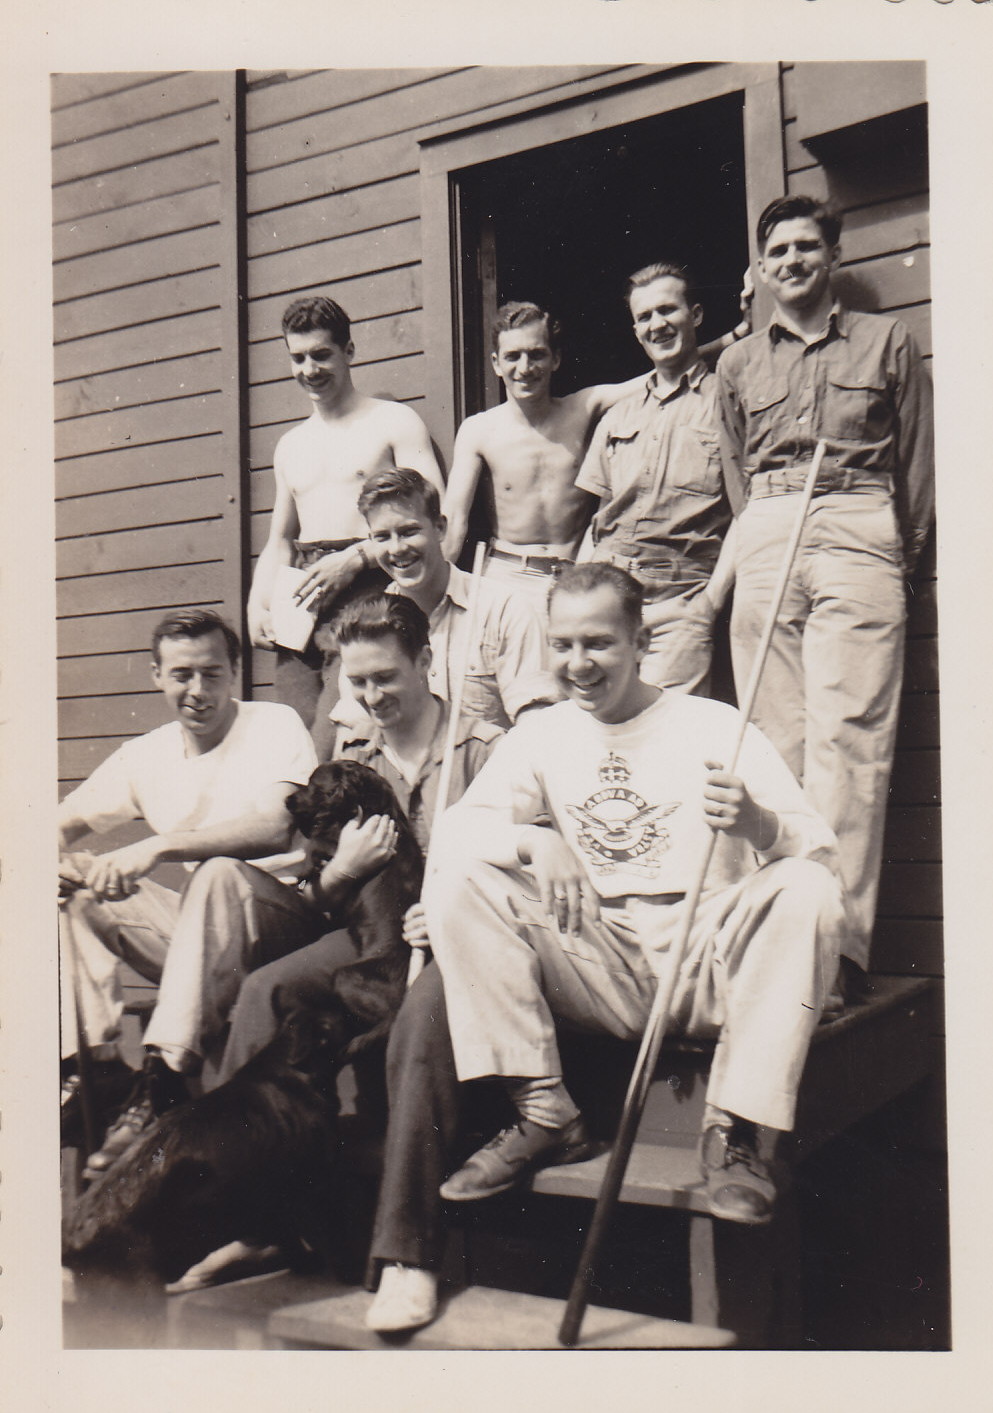  At Marble Island, BC, 1944